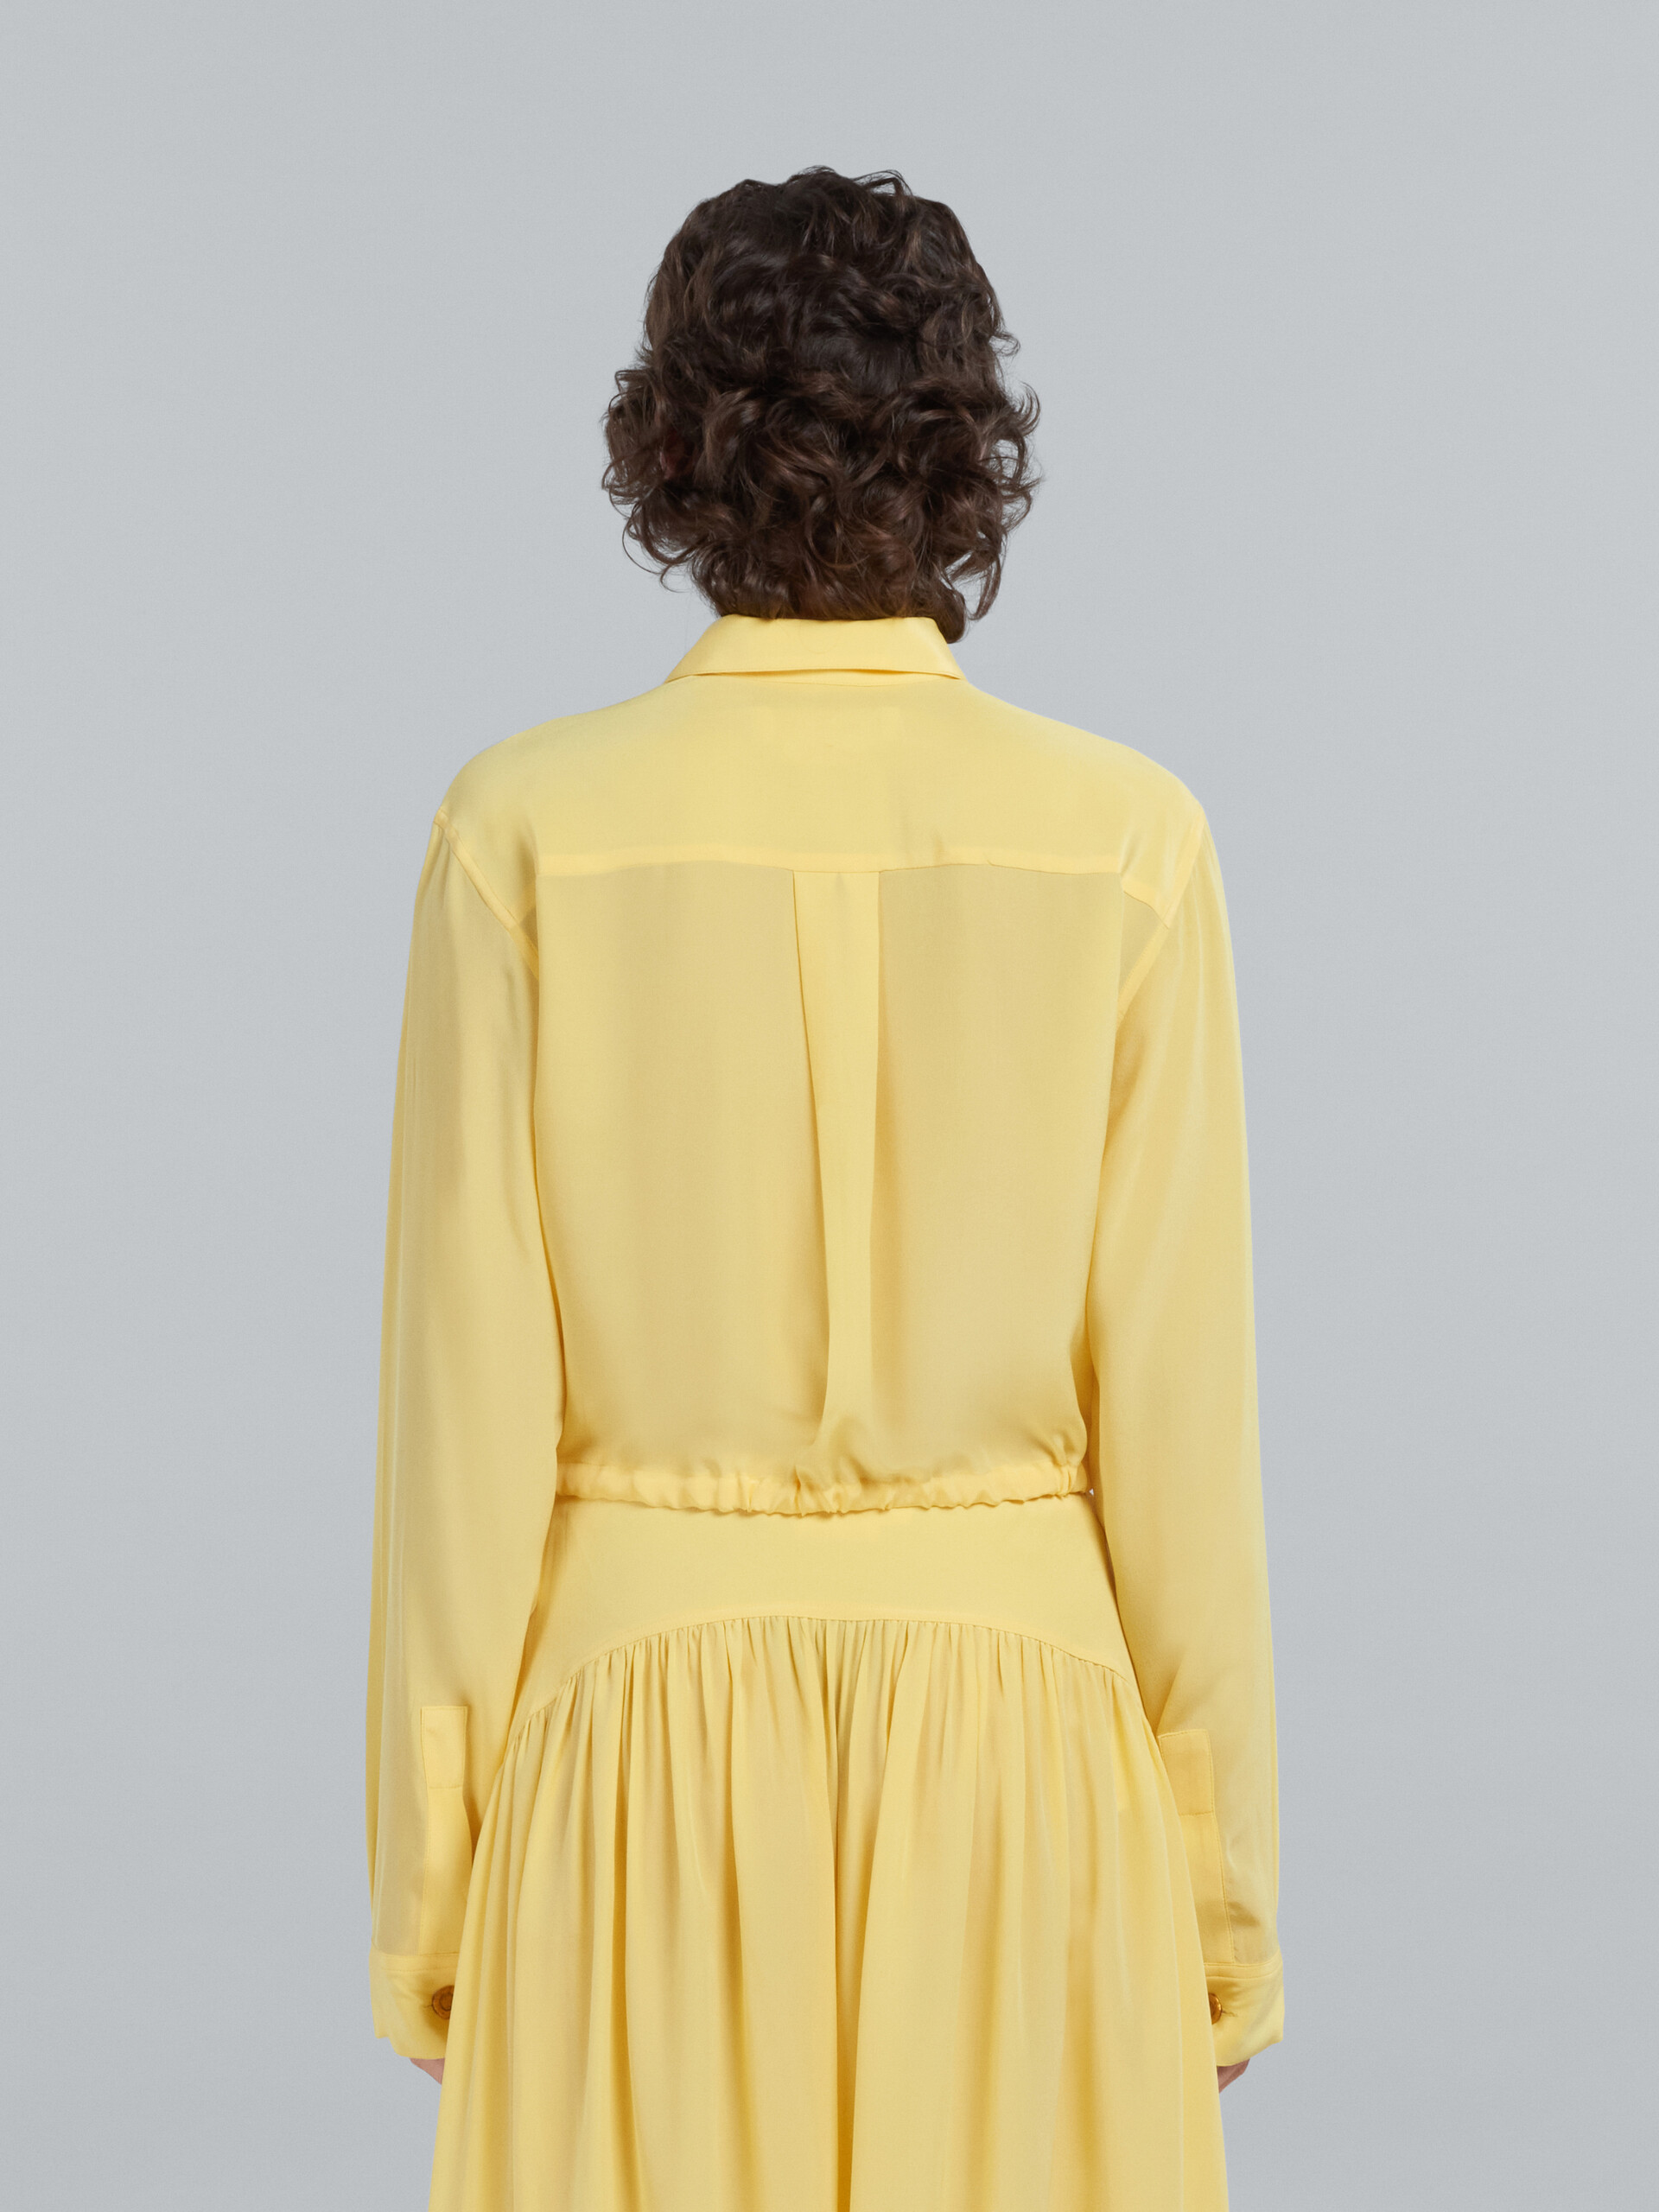 Chemise en soie jaune avec cordon coulissant - Chemises - Image 3